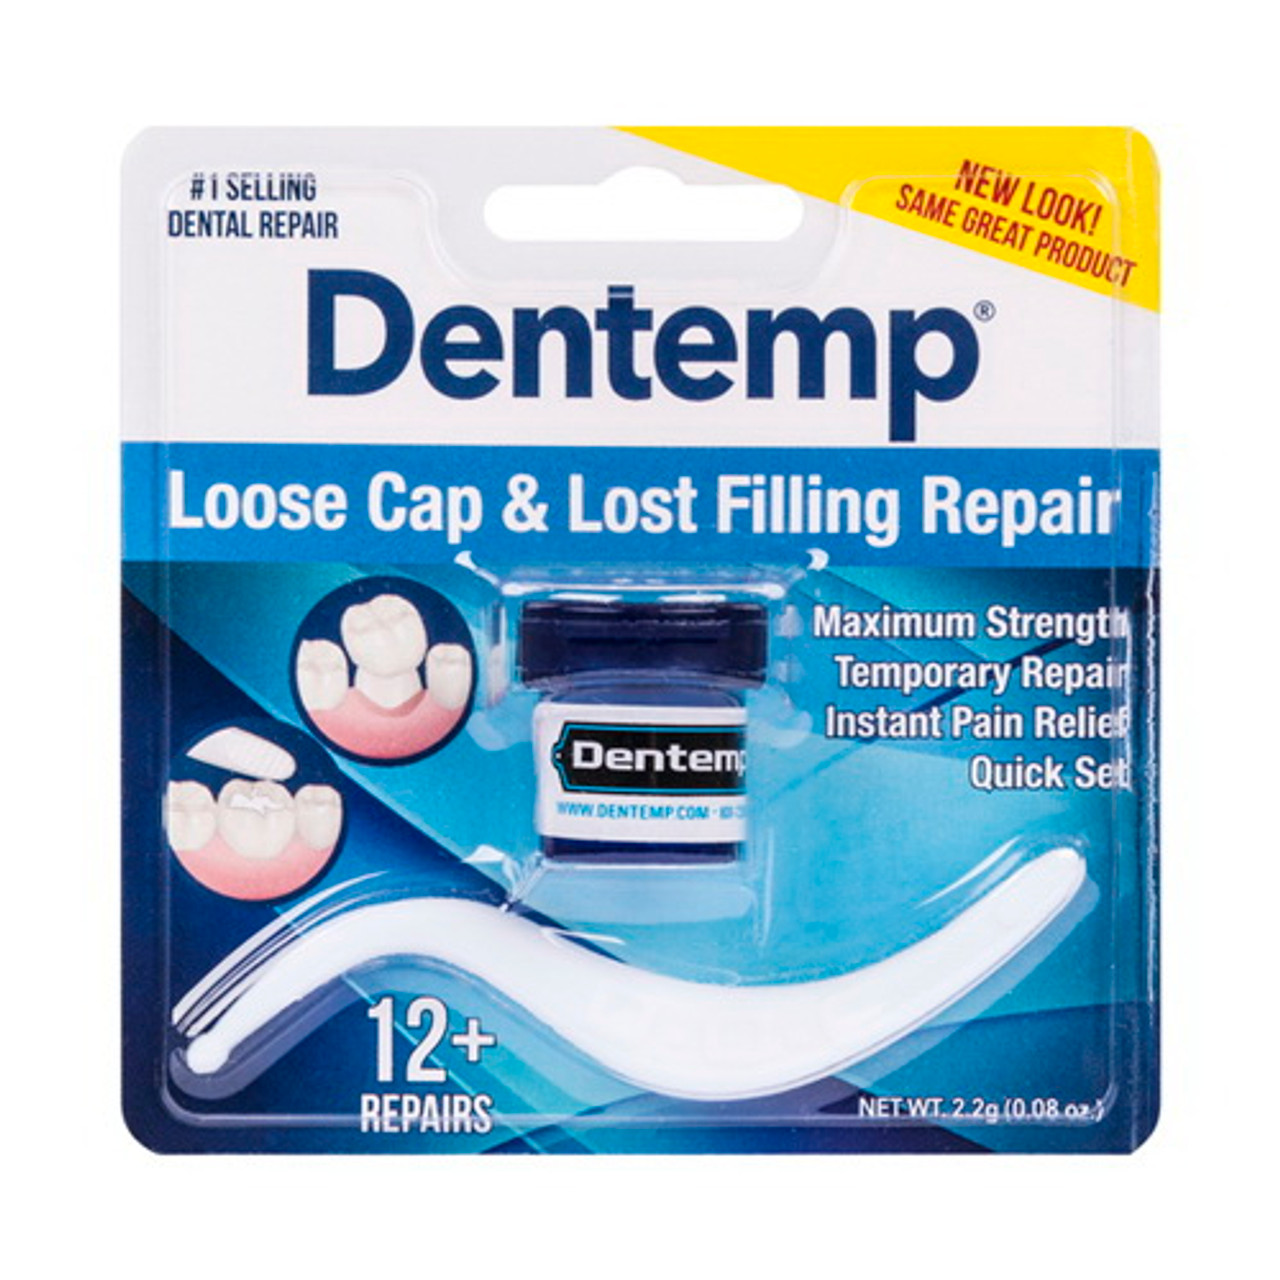 Dentemp Maximum Strength Lost Fillings and Loose Caps Dental